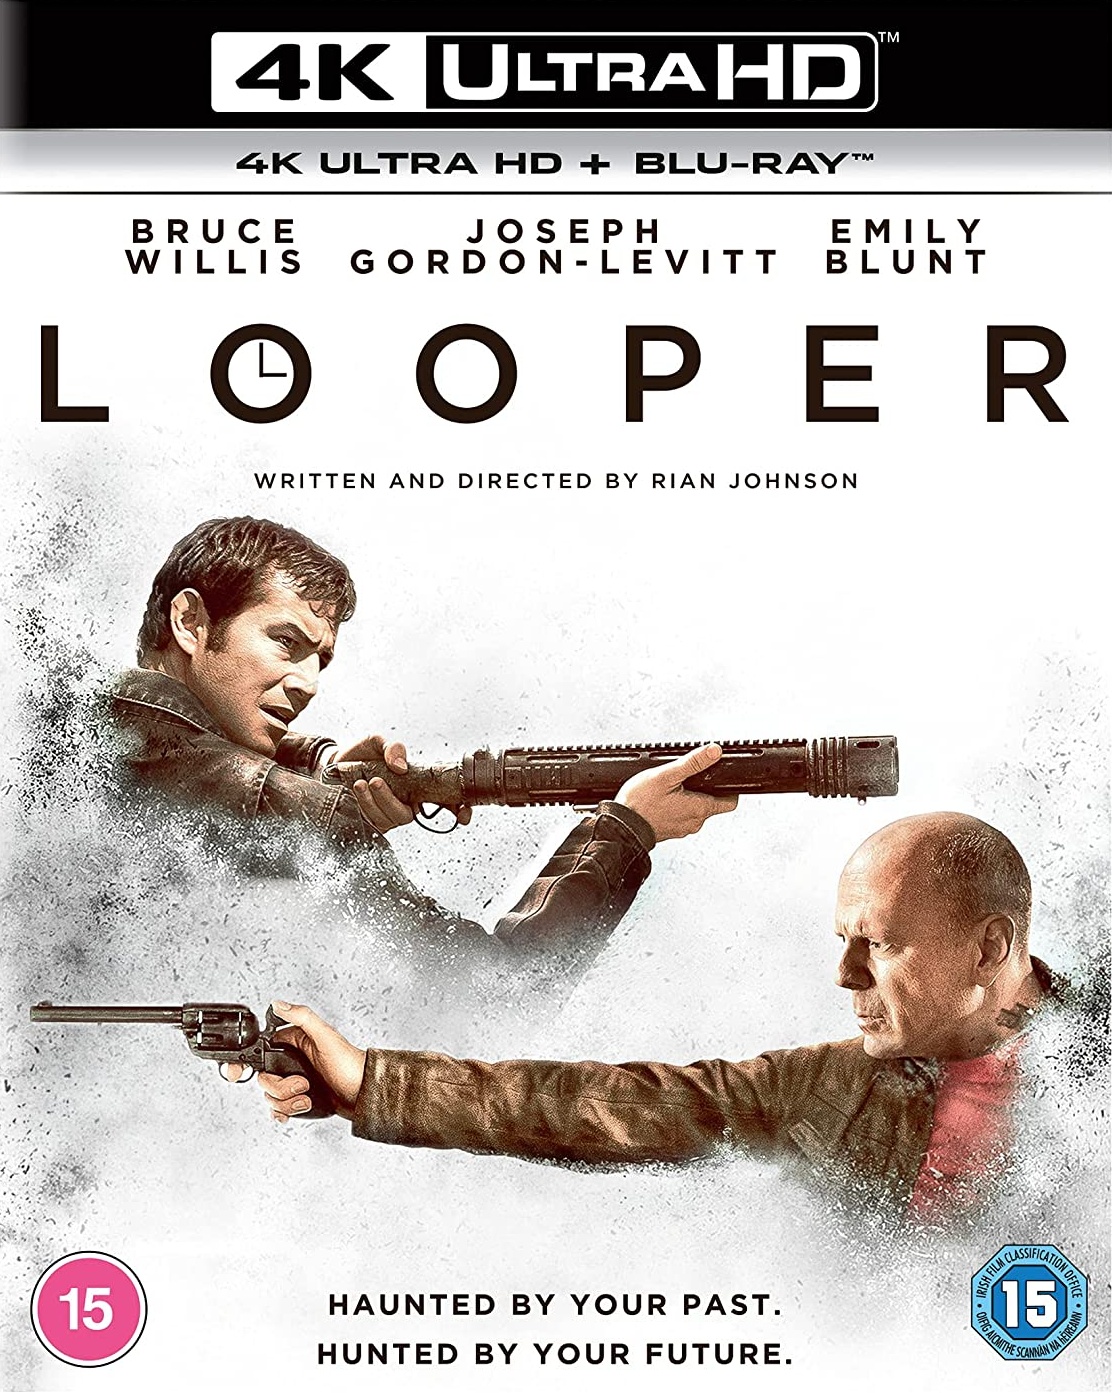 Stiahni si UHD Filmy Looper: Najemny zabijak / Looper (2012)(CZ/EN)[2160p] = CSFD 73%